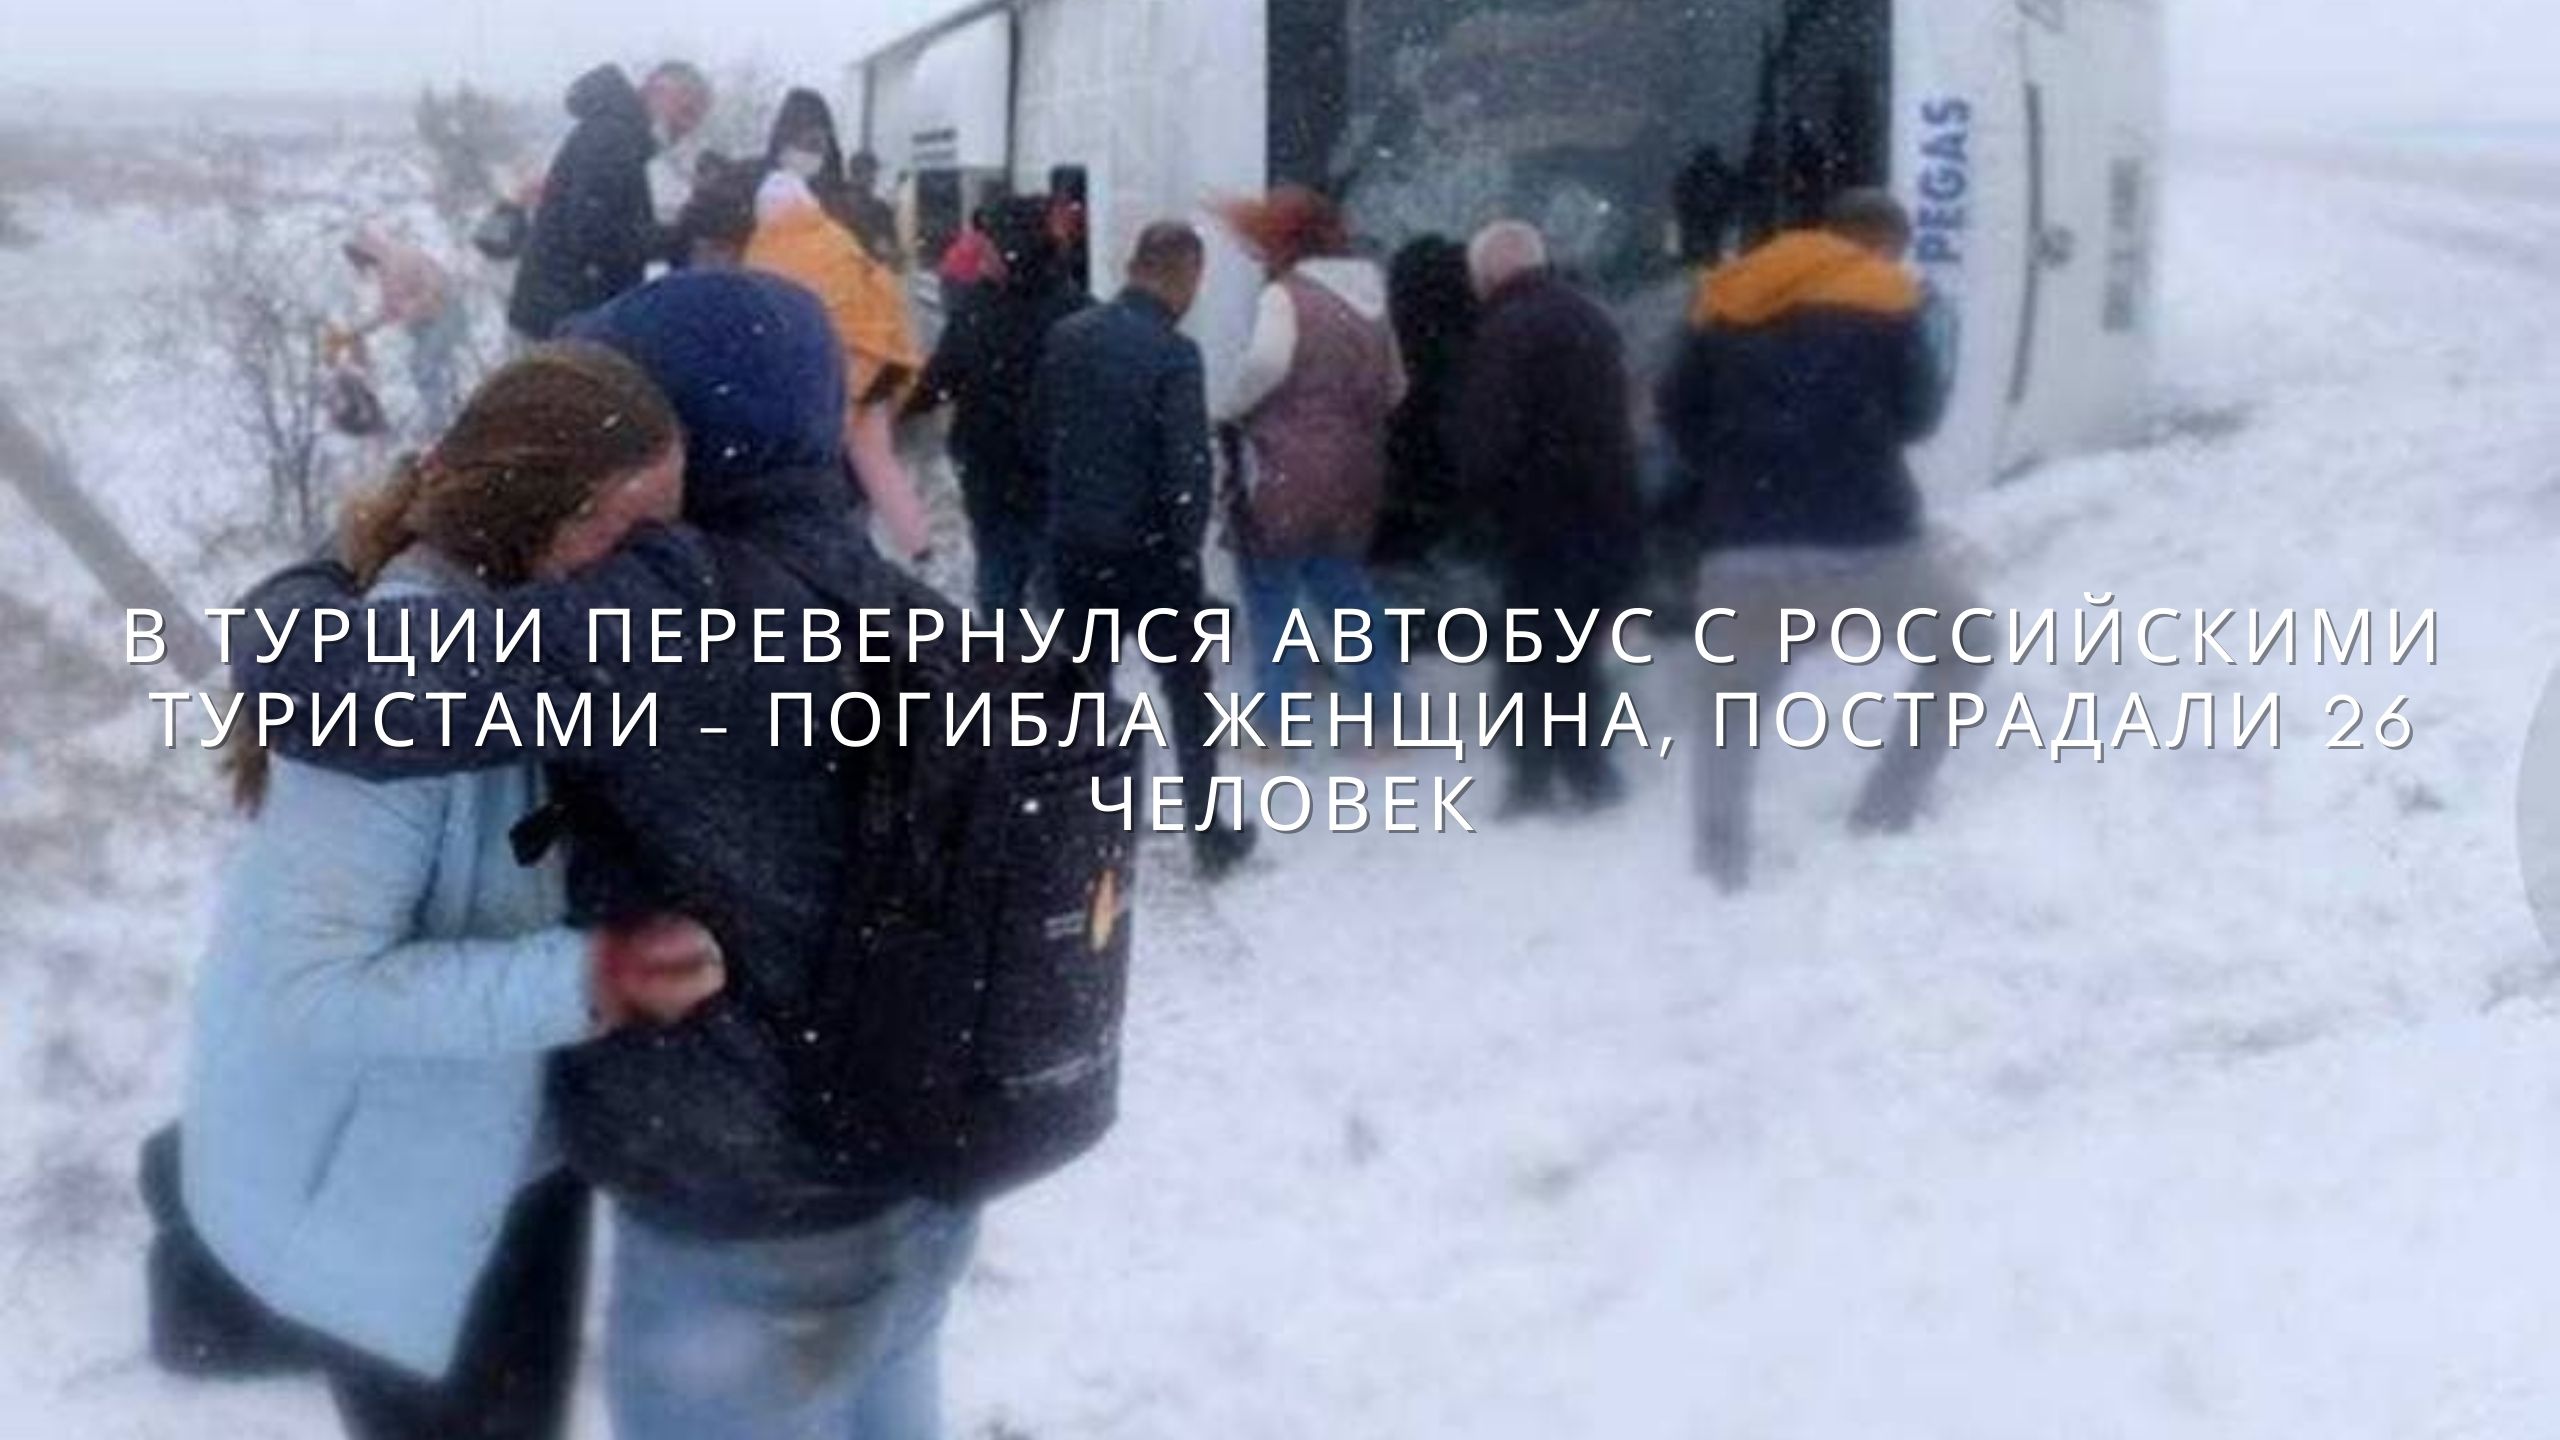 В группе 30 российских туристов. Перевернулся автобус с детьми. Турция происшествия с русскими туристами. Авария Турция автобус с русскими туристами.